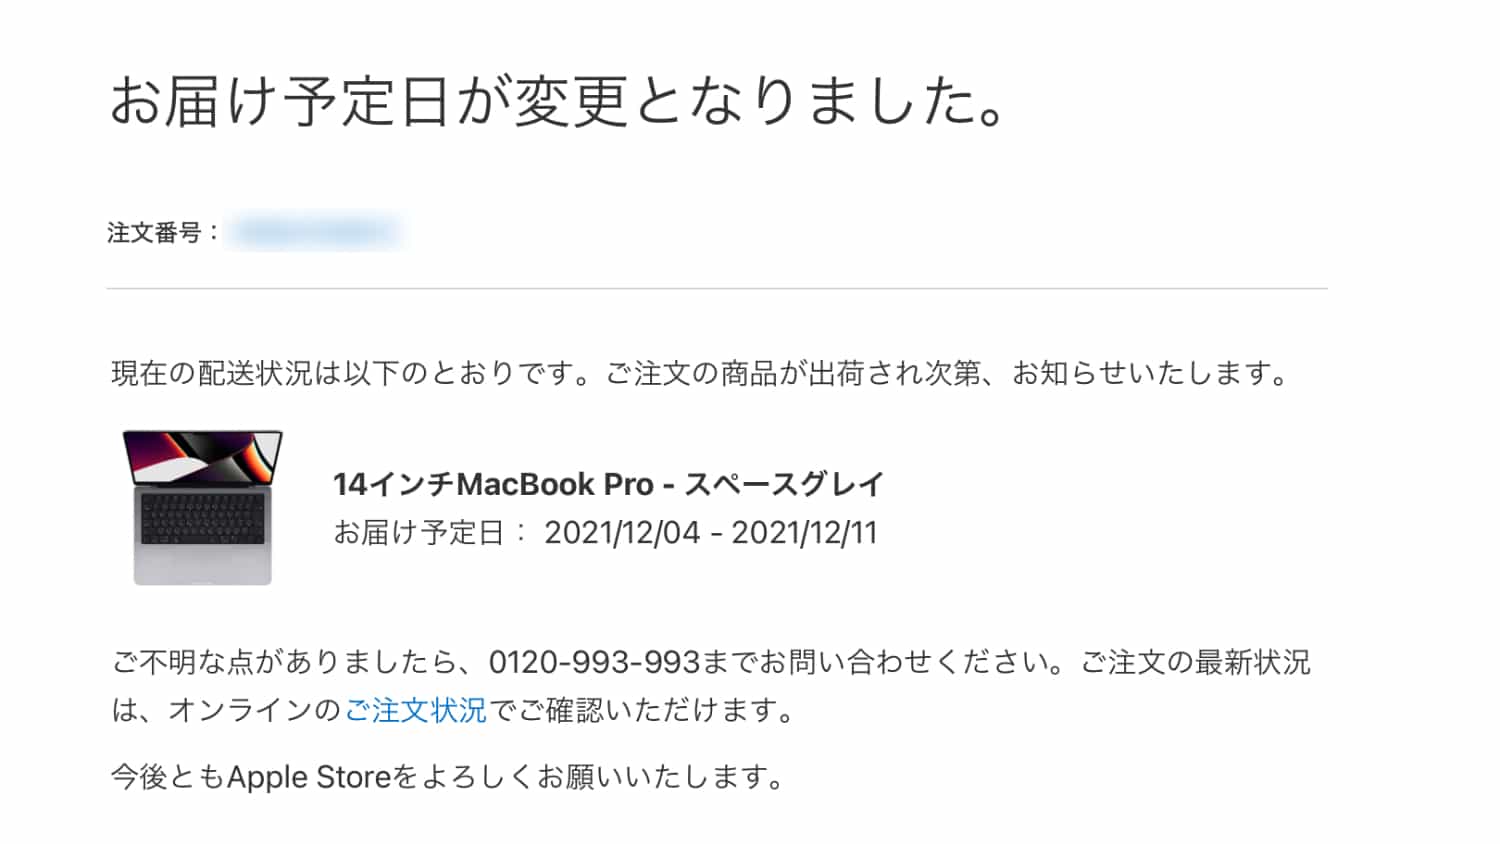 Appleから「14インチ MacBook Pro のお届予定日が変更になりました。」というメールがきました。